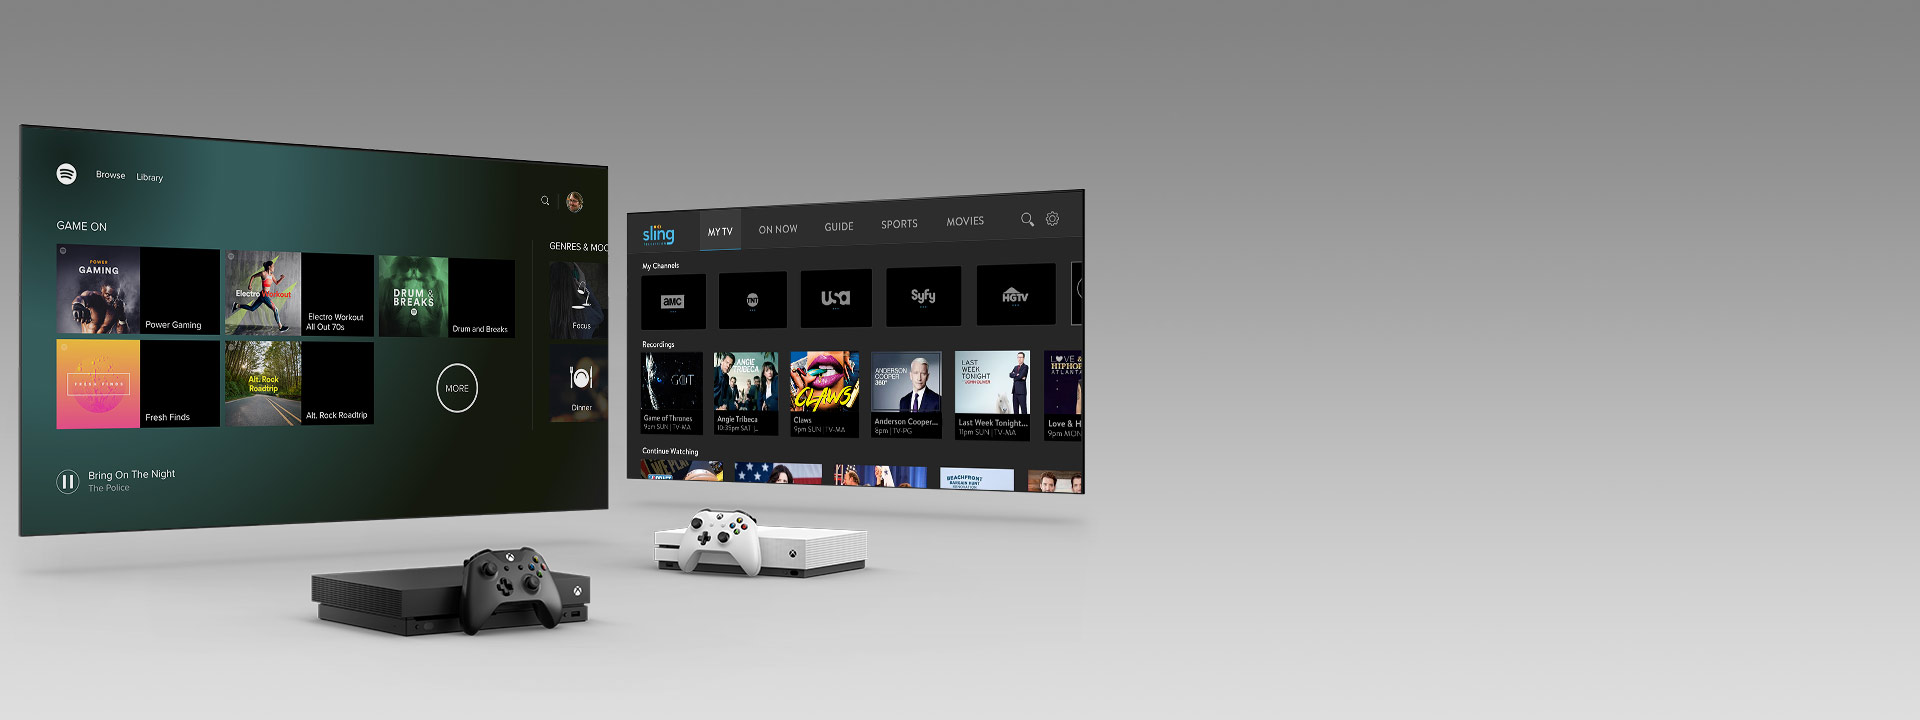 一個 Xbox Series X 和 Series S 以及多個控制器位於兩個顯示 App 使用者介面的電視螢幕前方。